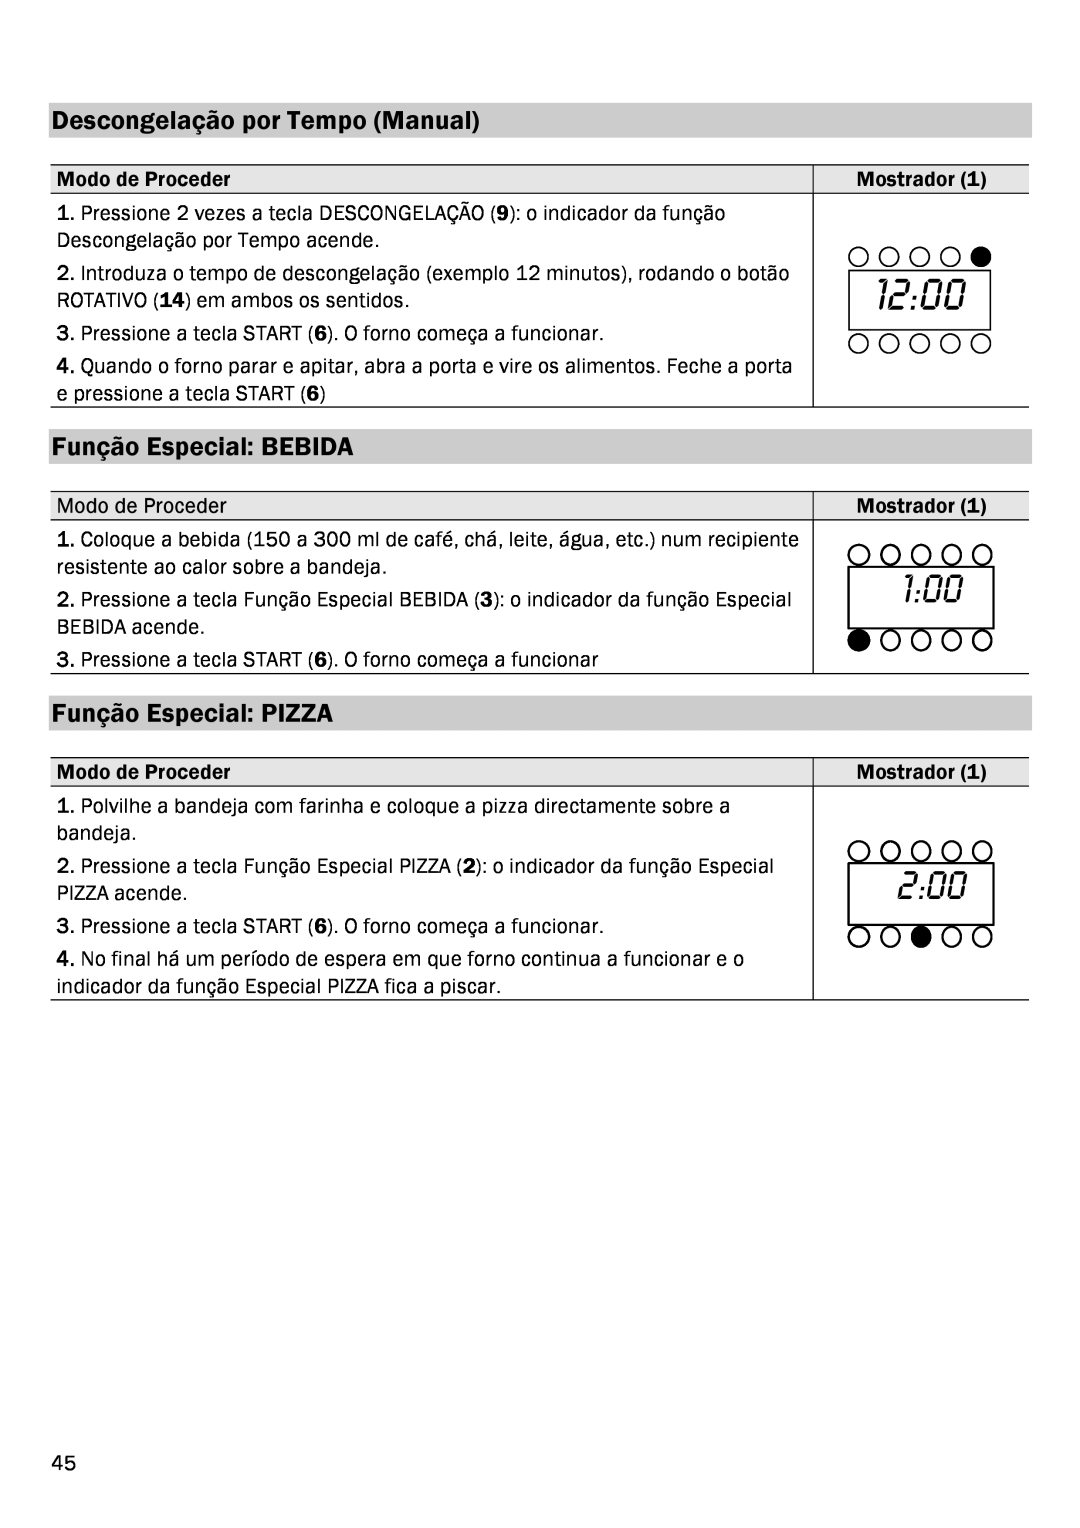 Smeg FME20EX1 manual Descongelação por Tempo Manual, Função Especial BEBIDA, Função Especial PIZZA, 1200, Modo de Proceder 